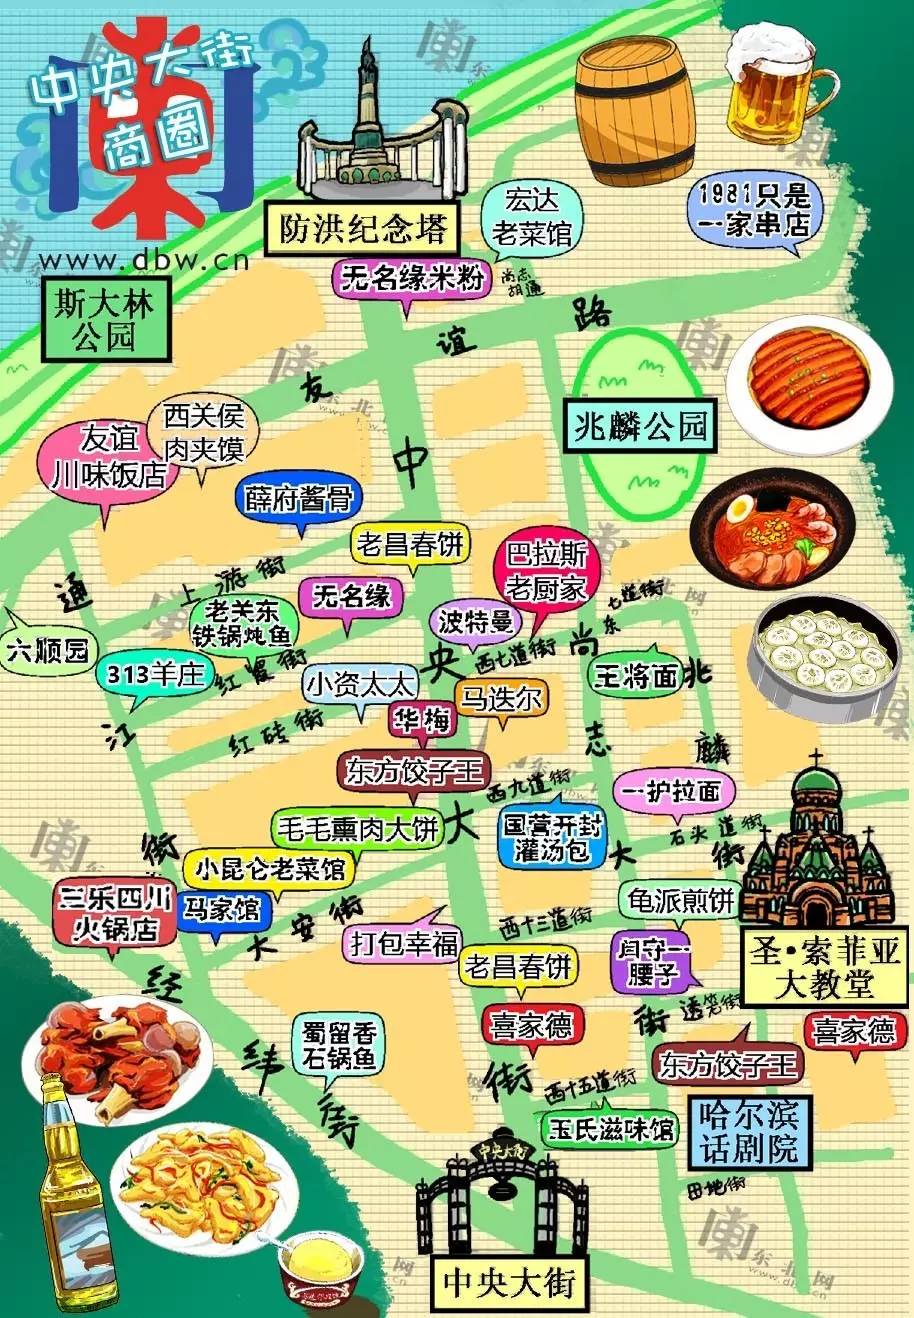 第一版 中央大街(哈尔滨)美食地图出炉喽